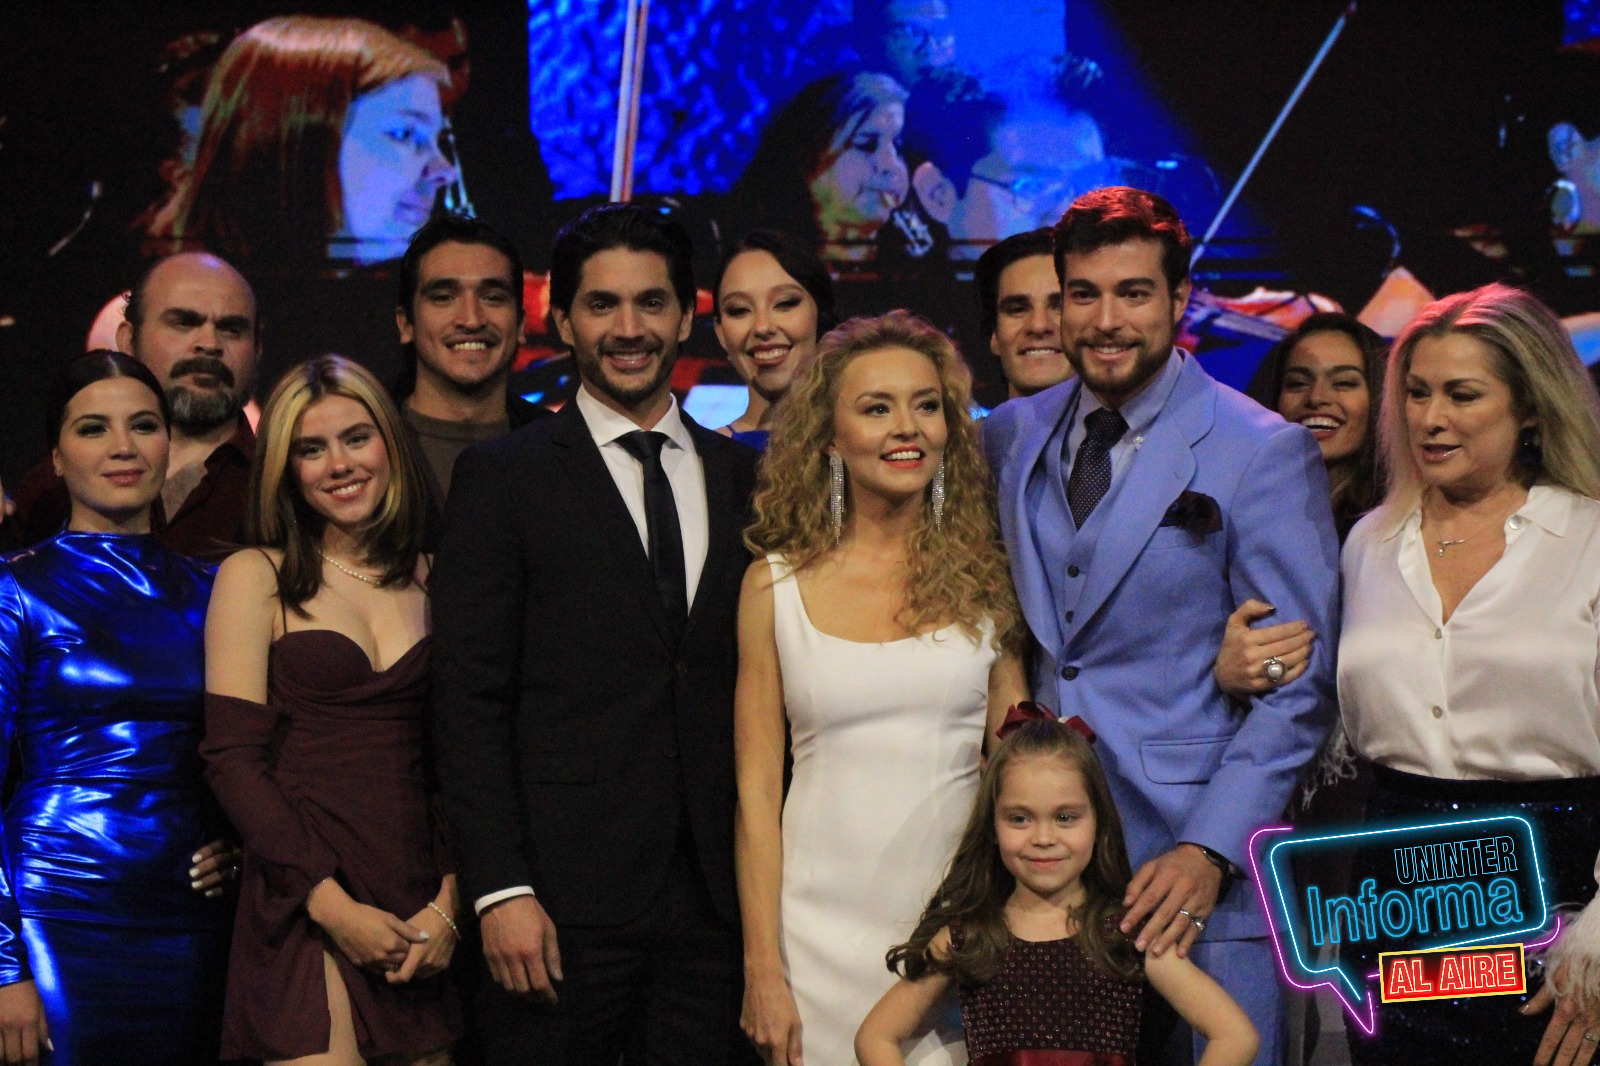 El pasado 15 de febrero en las instalaciones de Televisa San Ángel Juan Osorio presentó El Amor invencible su nueva producción con Televisa.